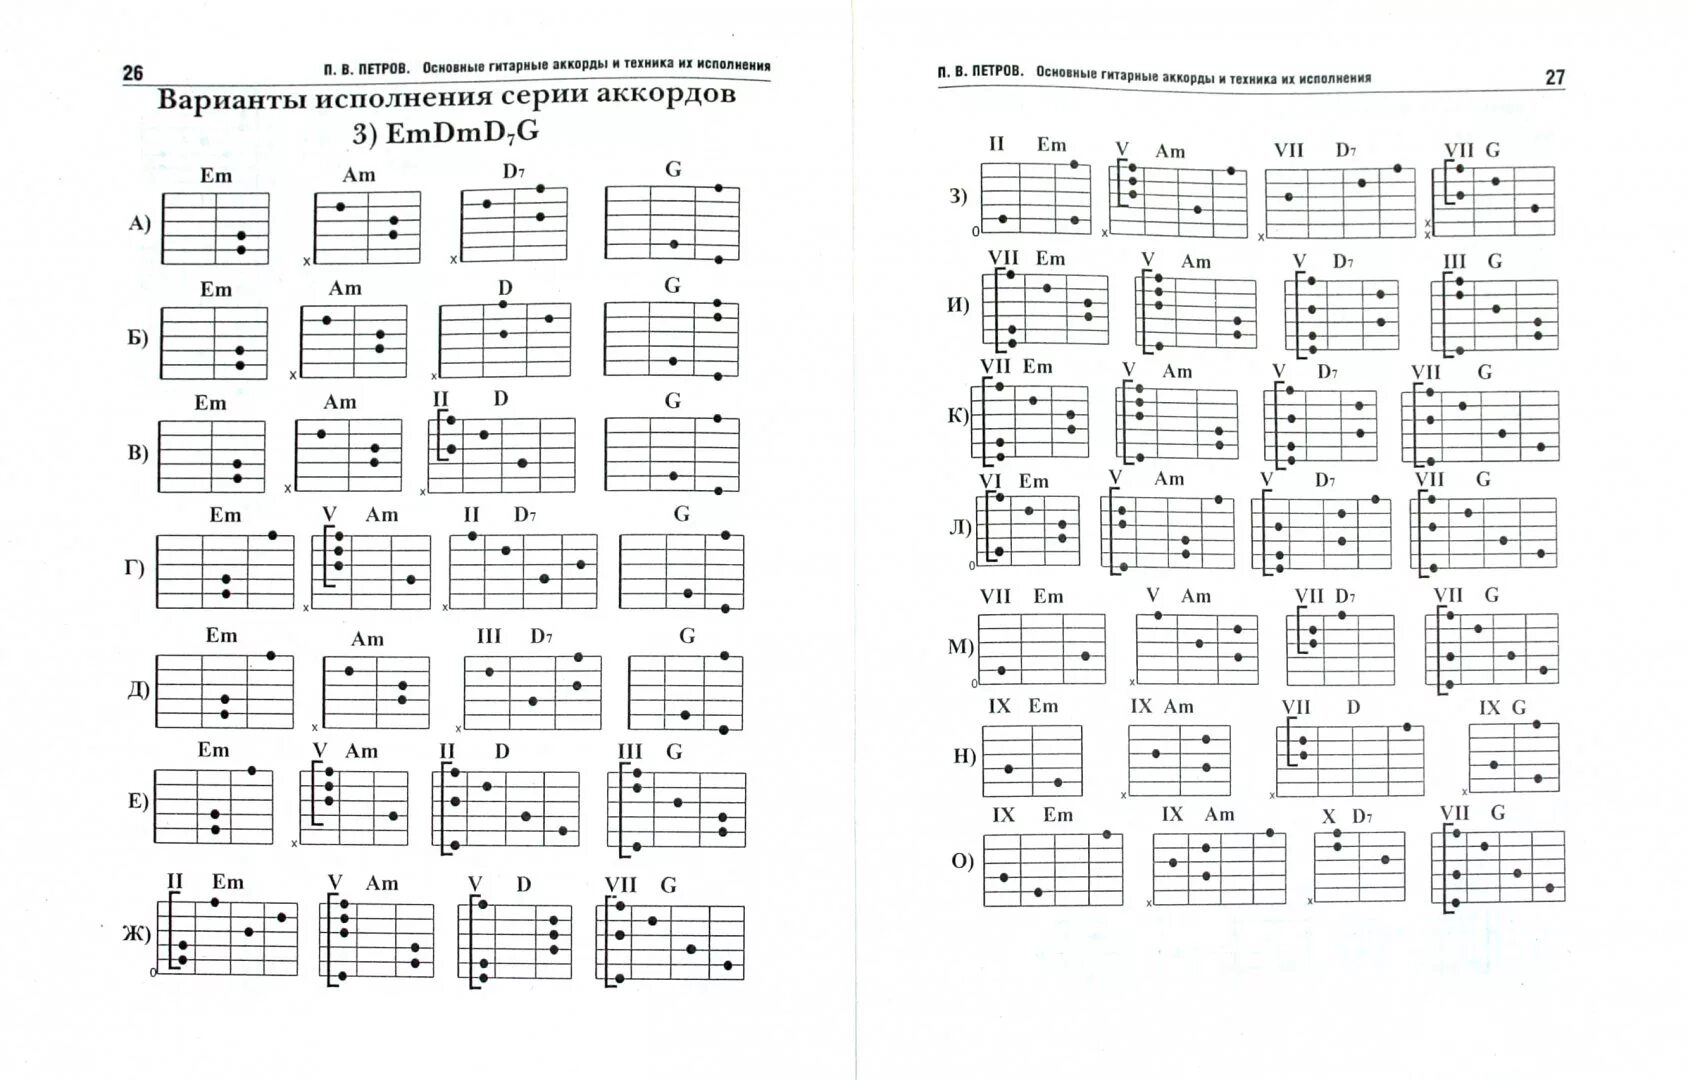 Таблица аккордов для гитары 6 струн для начинающих. Гитарные аккорды таблица для начинающих. Аккорды на 6 струнной гитаре. Таблица простых аккордов для гитары 6 струн. Скоро начнется апрель аккорды